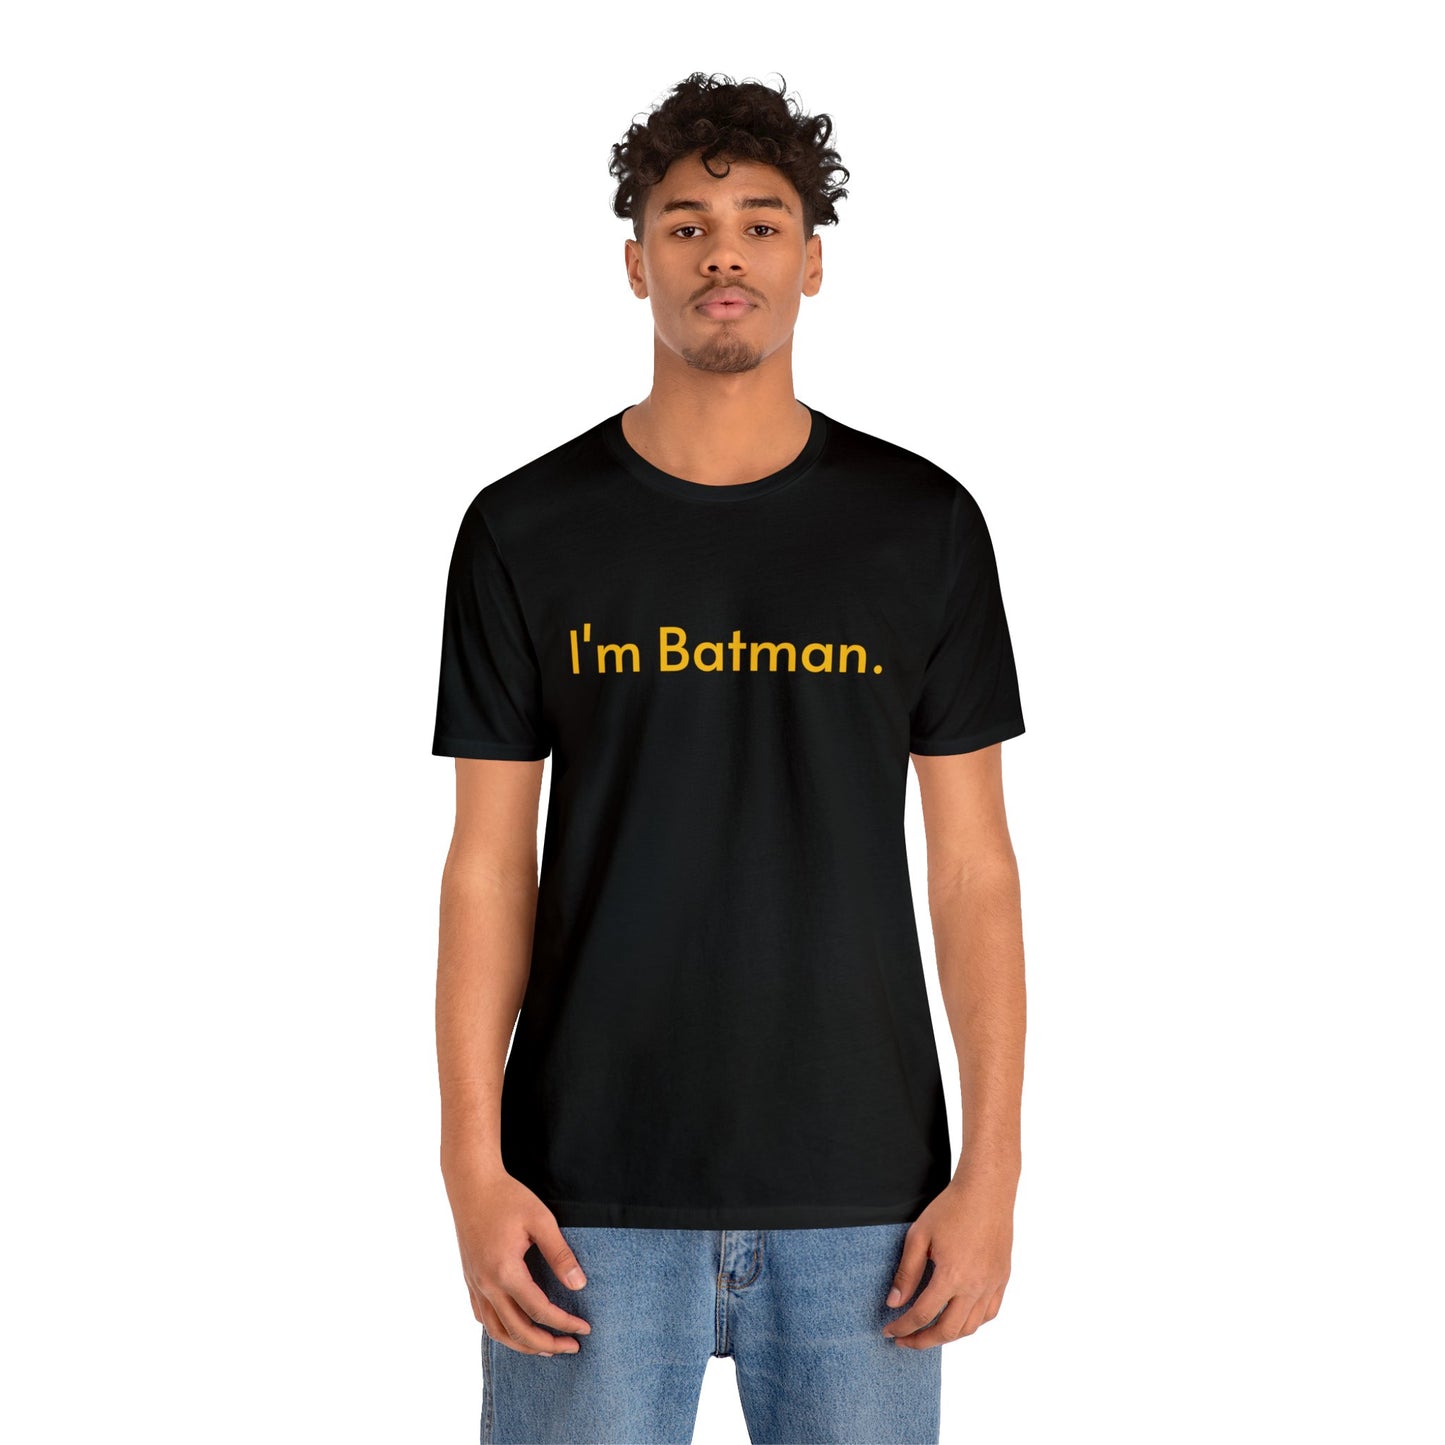 I'm Batman.